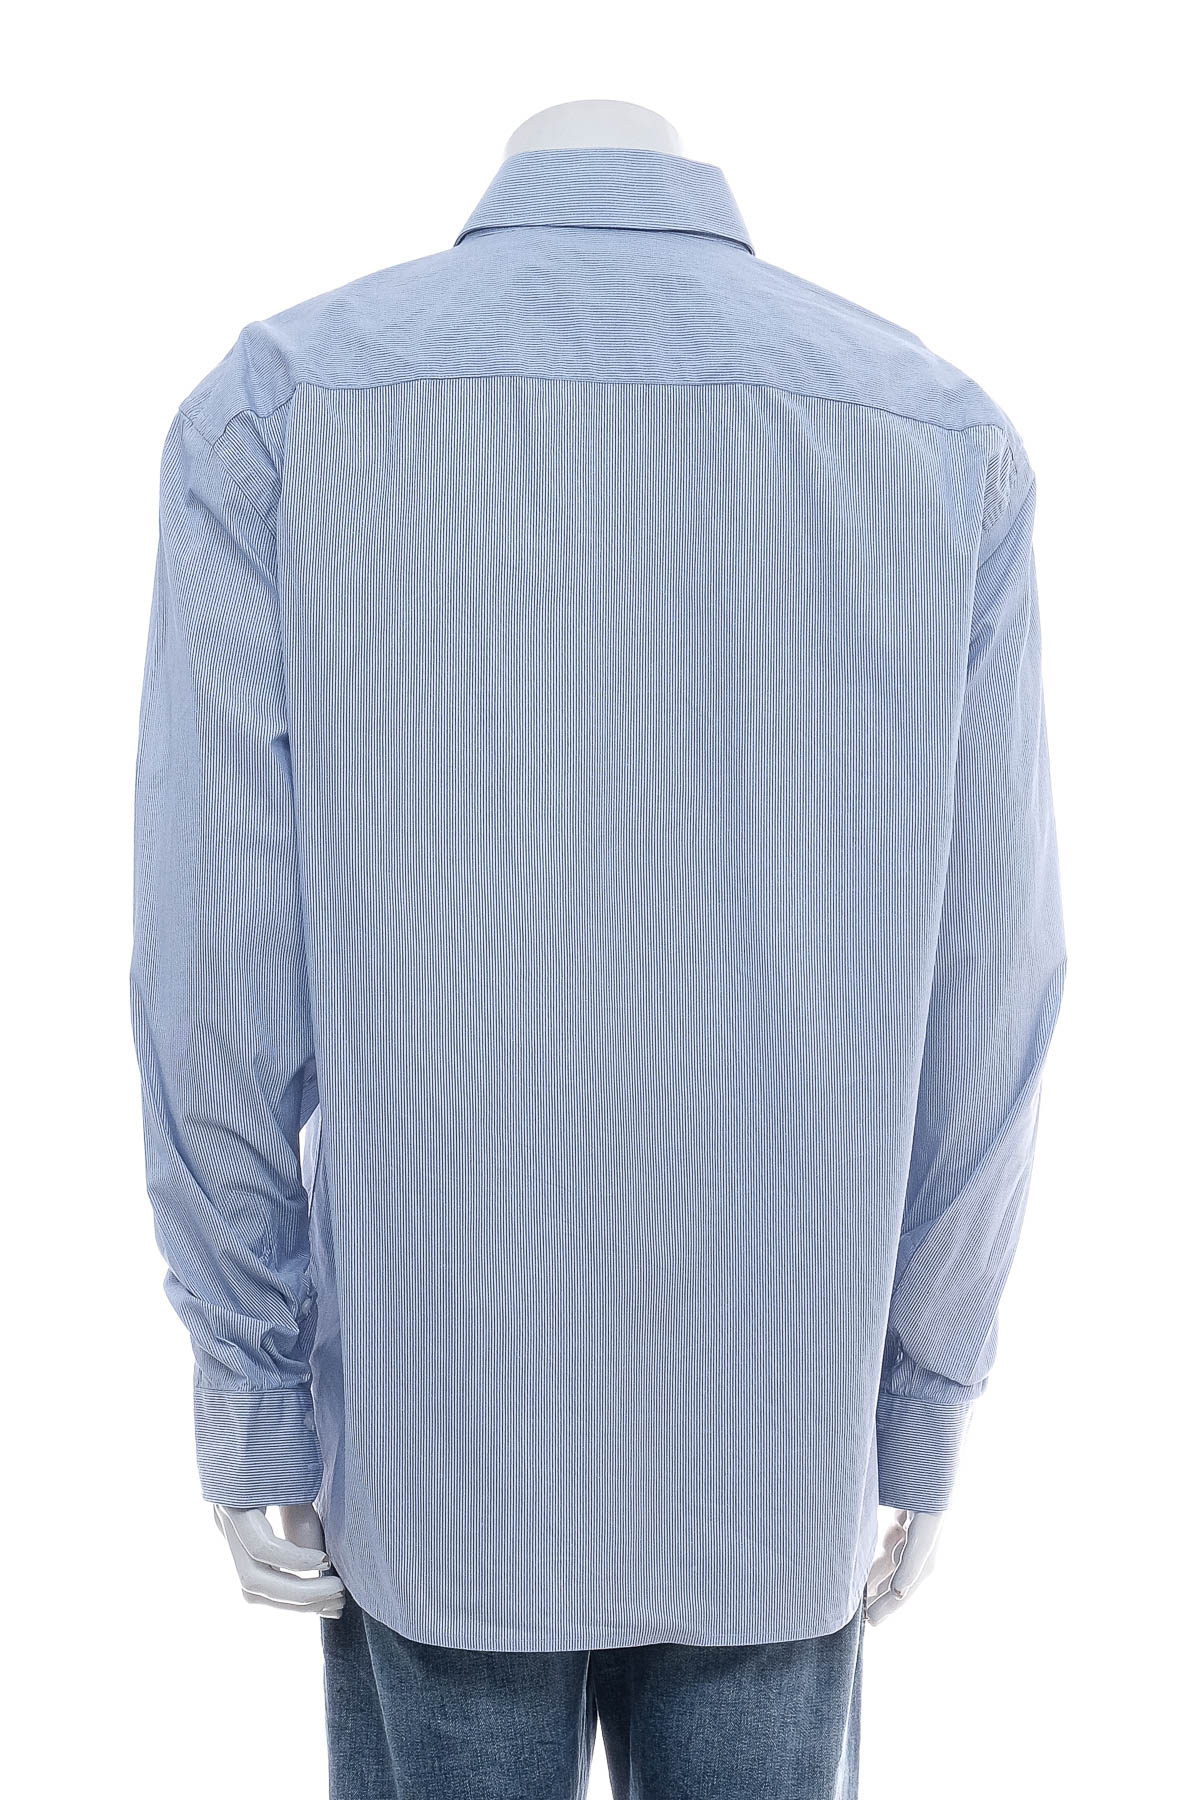 Ανδρικό πουκάμισο - IVEO by jbc - 1